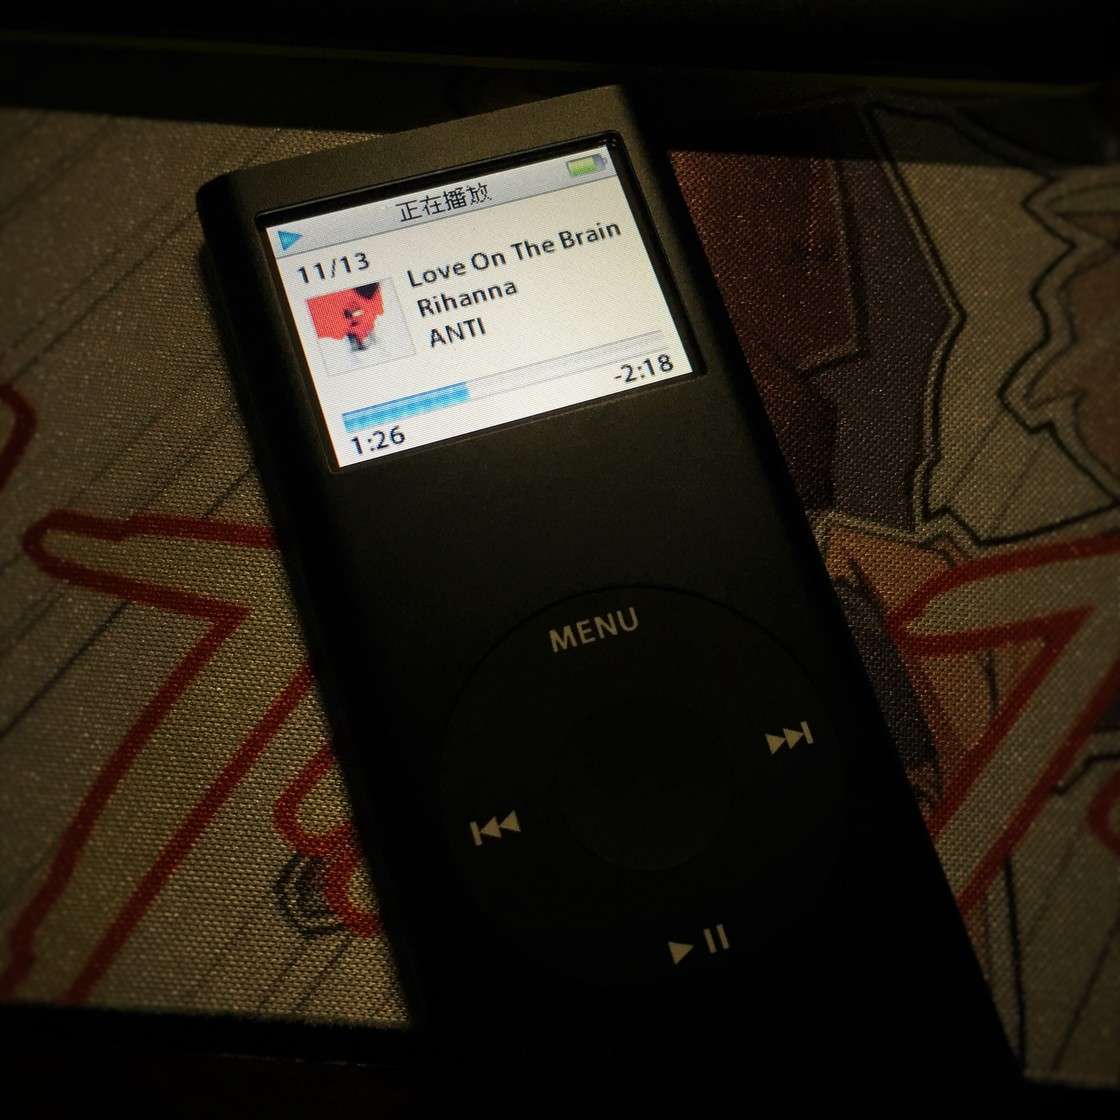 串流音乐时代 我为什么还在坚持使用ipod Nano 听歌 知乎